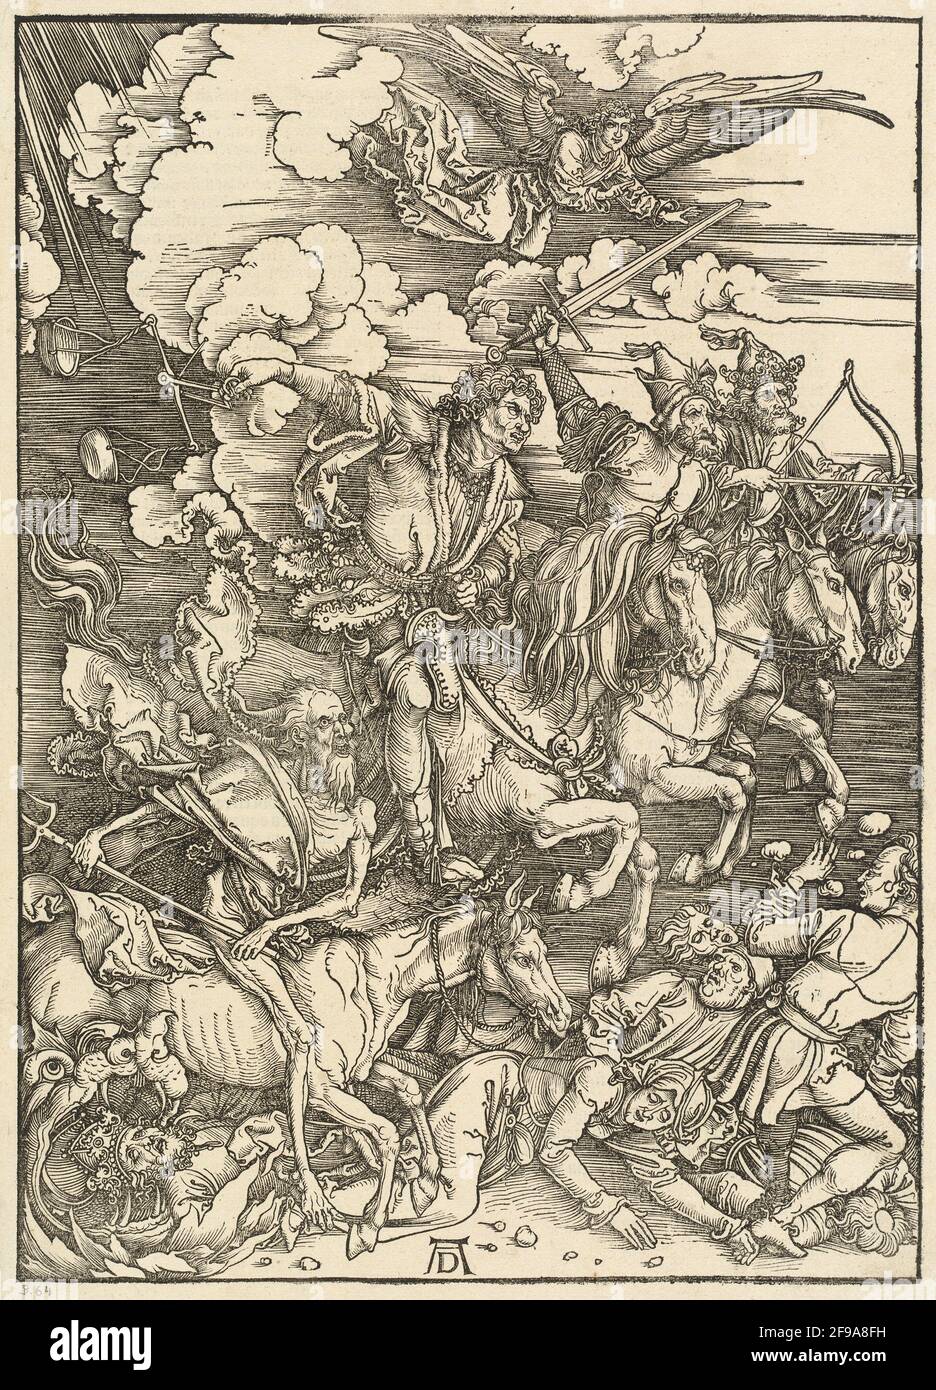 The Four Horsemen, 1498. Stock Photo